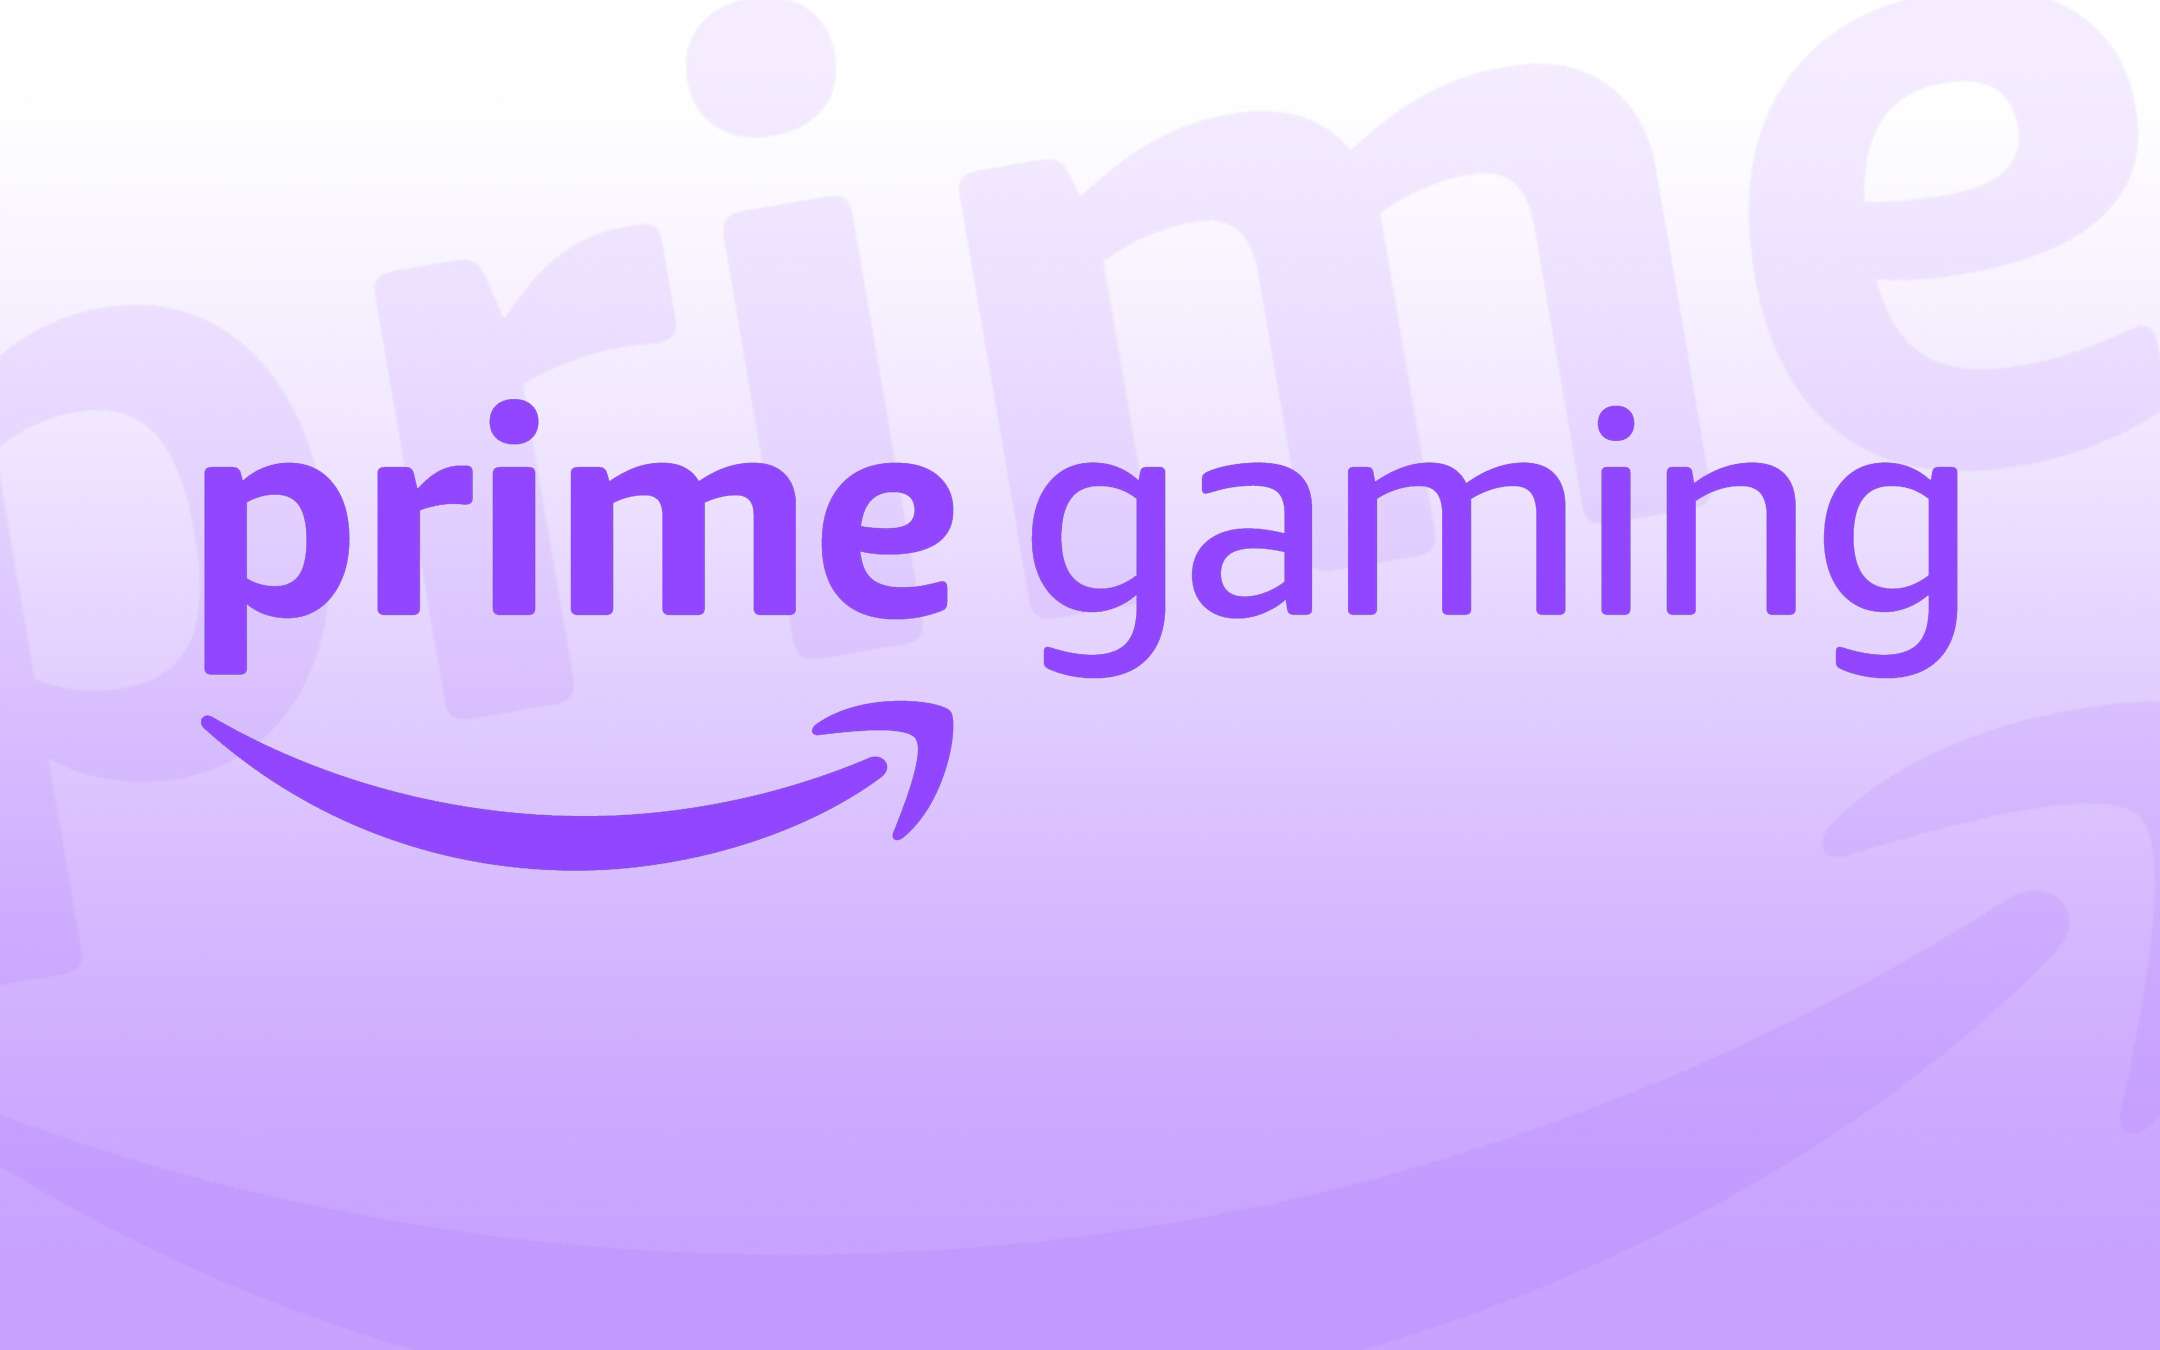 Amazon ribattezza Twitch Prime: ora è Prime Gaming